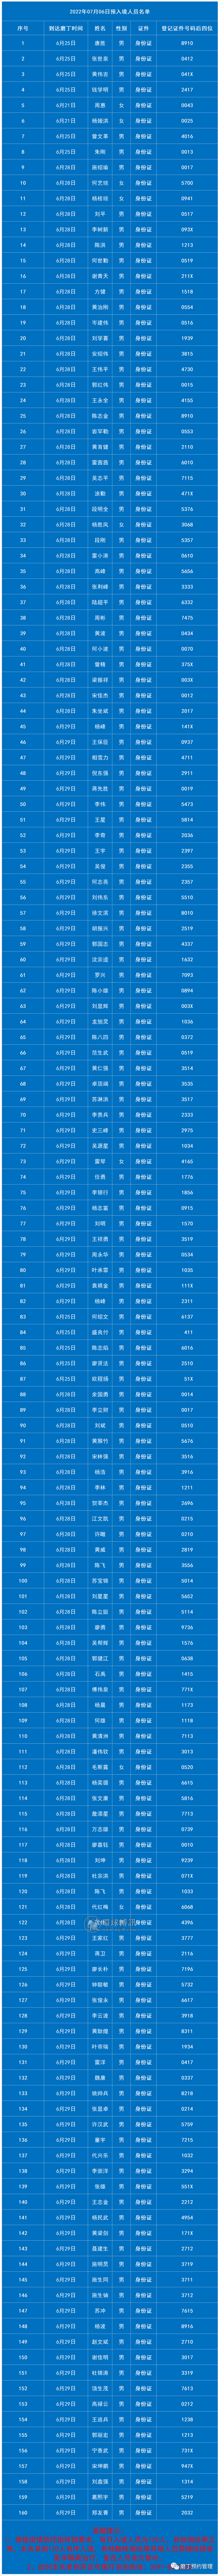 7月6日老挝磨丁预入境中国人员名单